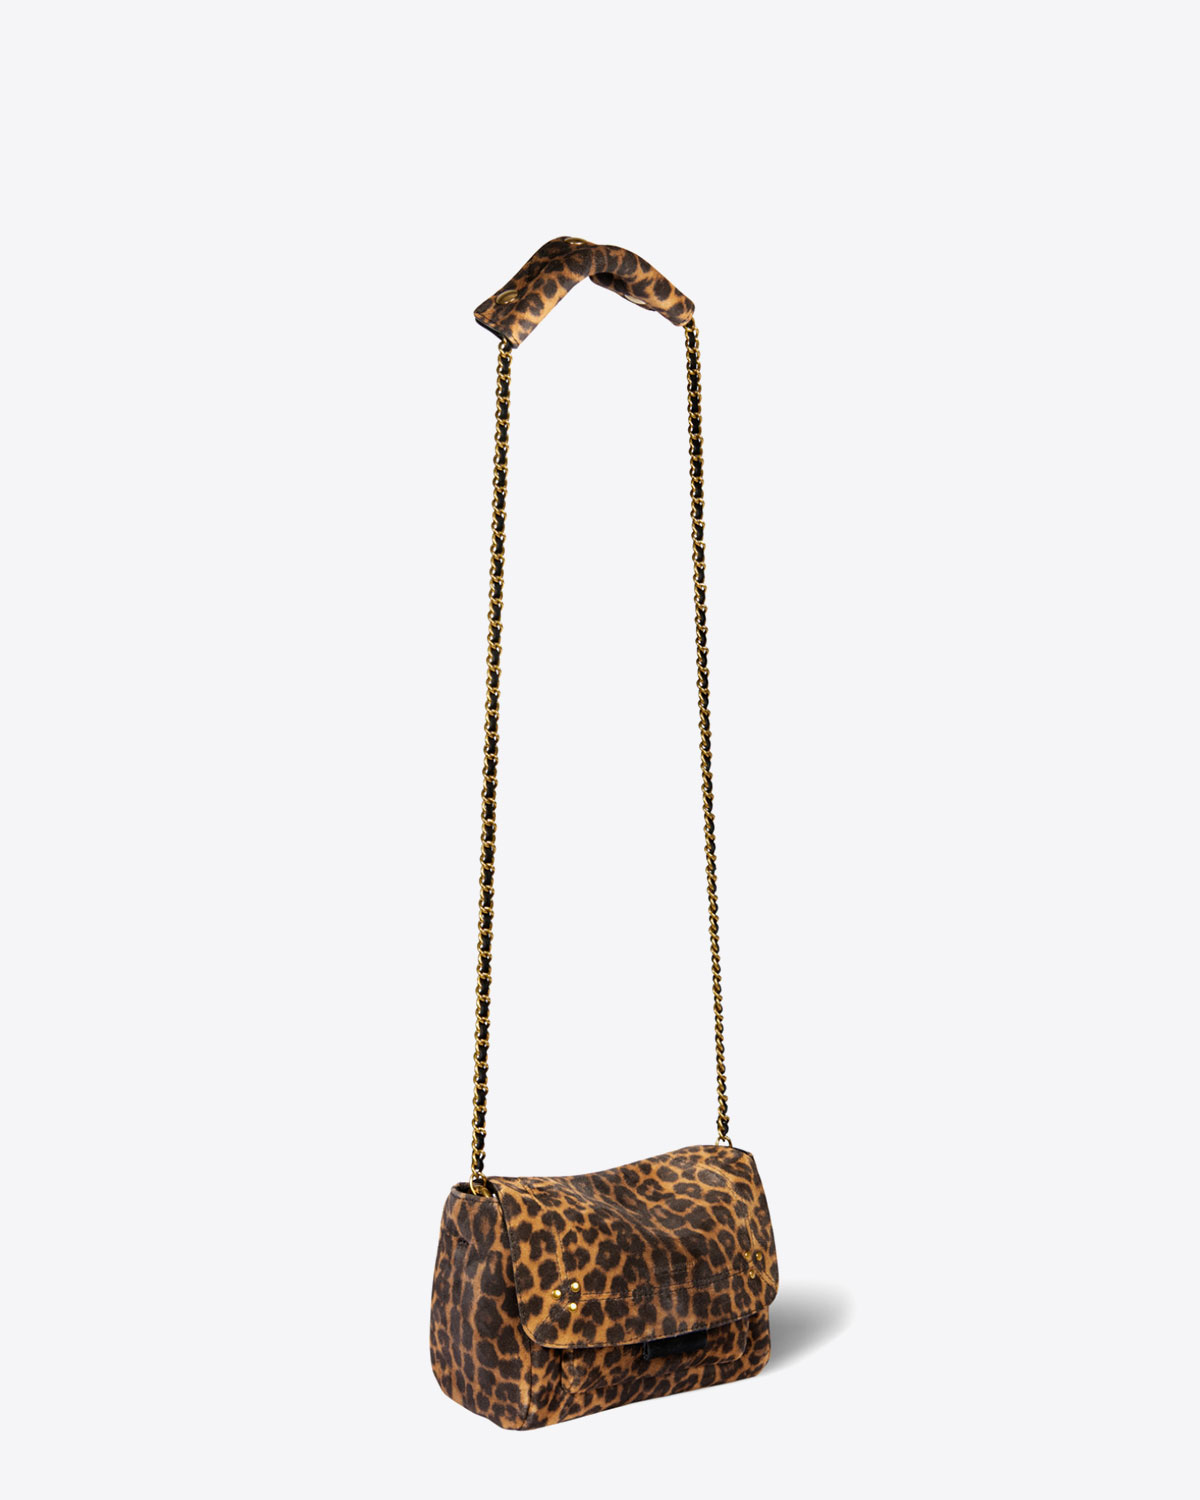 Mini-sac Lulu S en cuir velours imprimé léopard Jérôme Dreyfuss. Longue chaine dorée. 